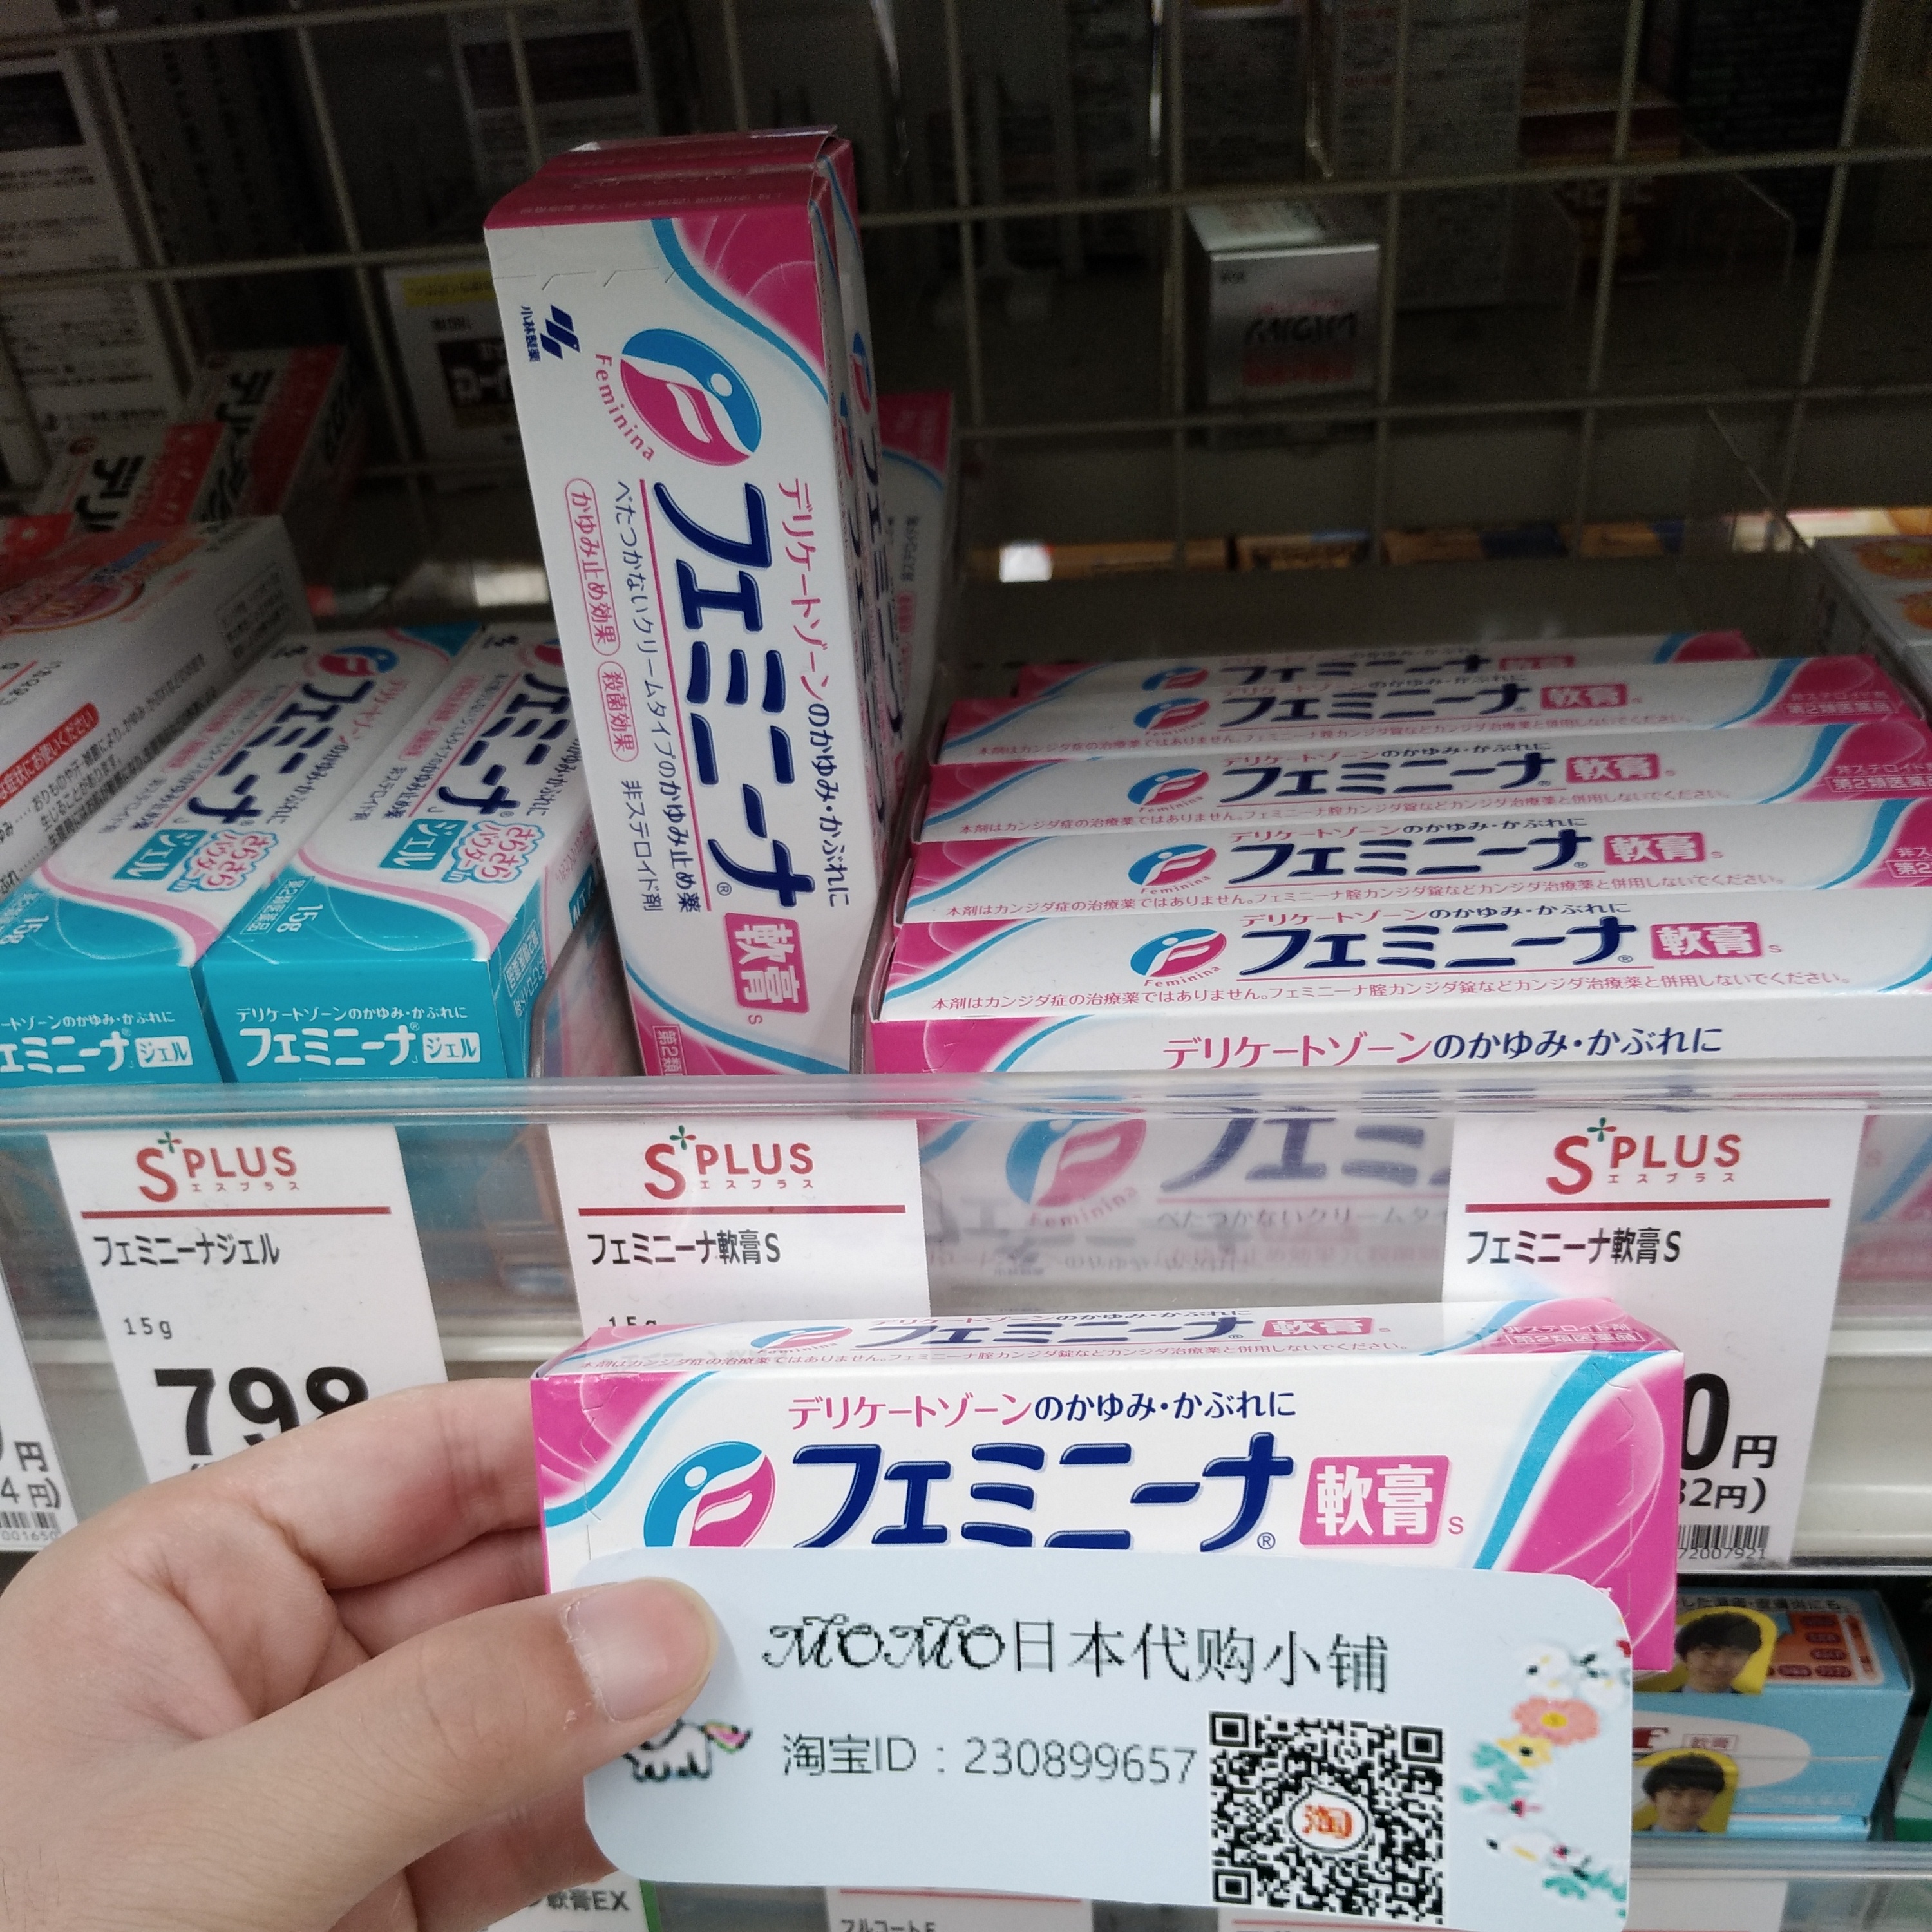 共483 件日本软膏相关商品